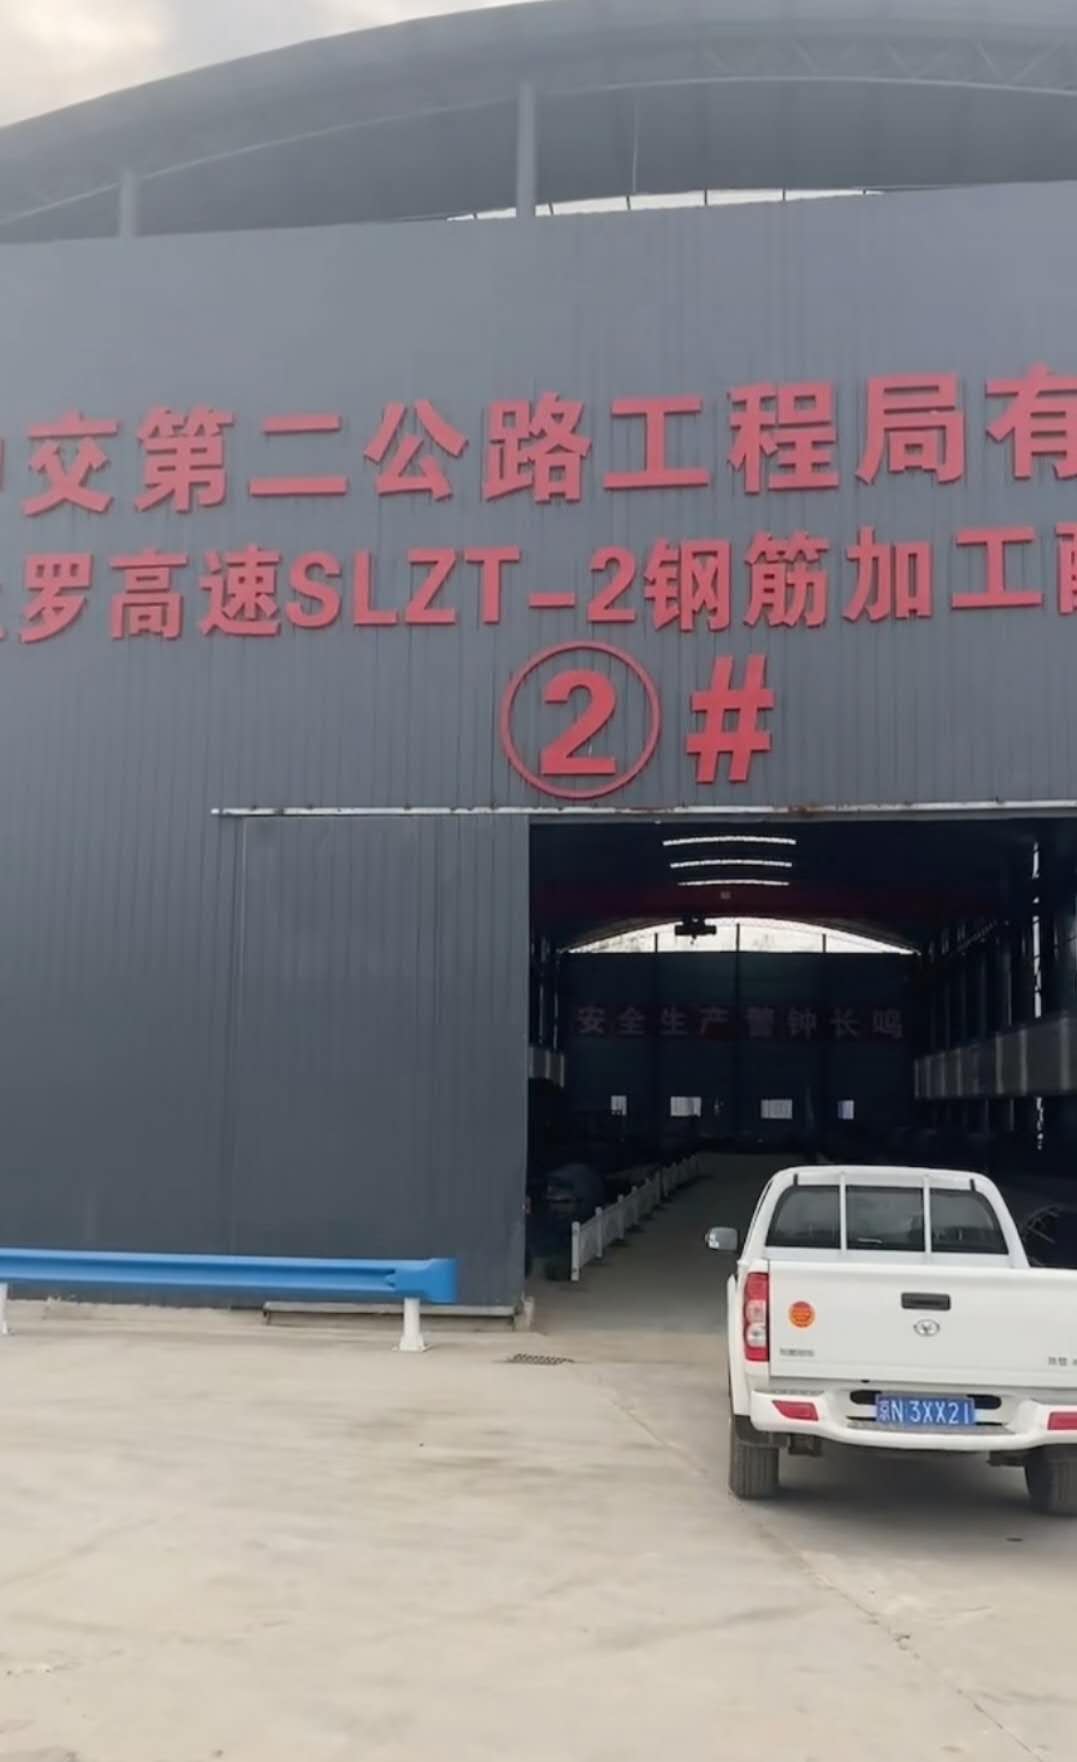 中交第二公路工程局有限公司訂購三臺12S鋼筋數控彎箍機